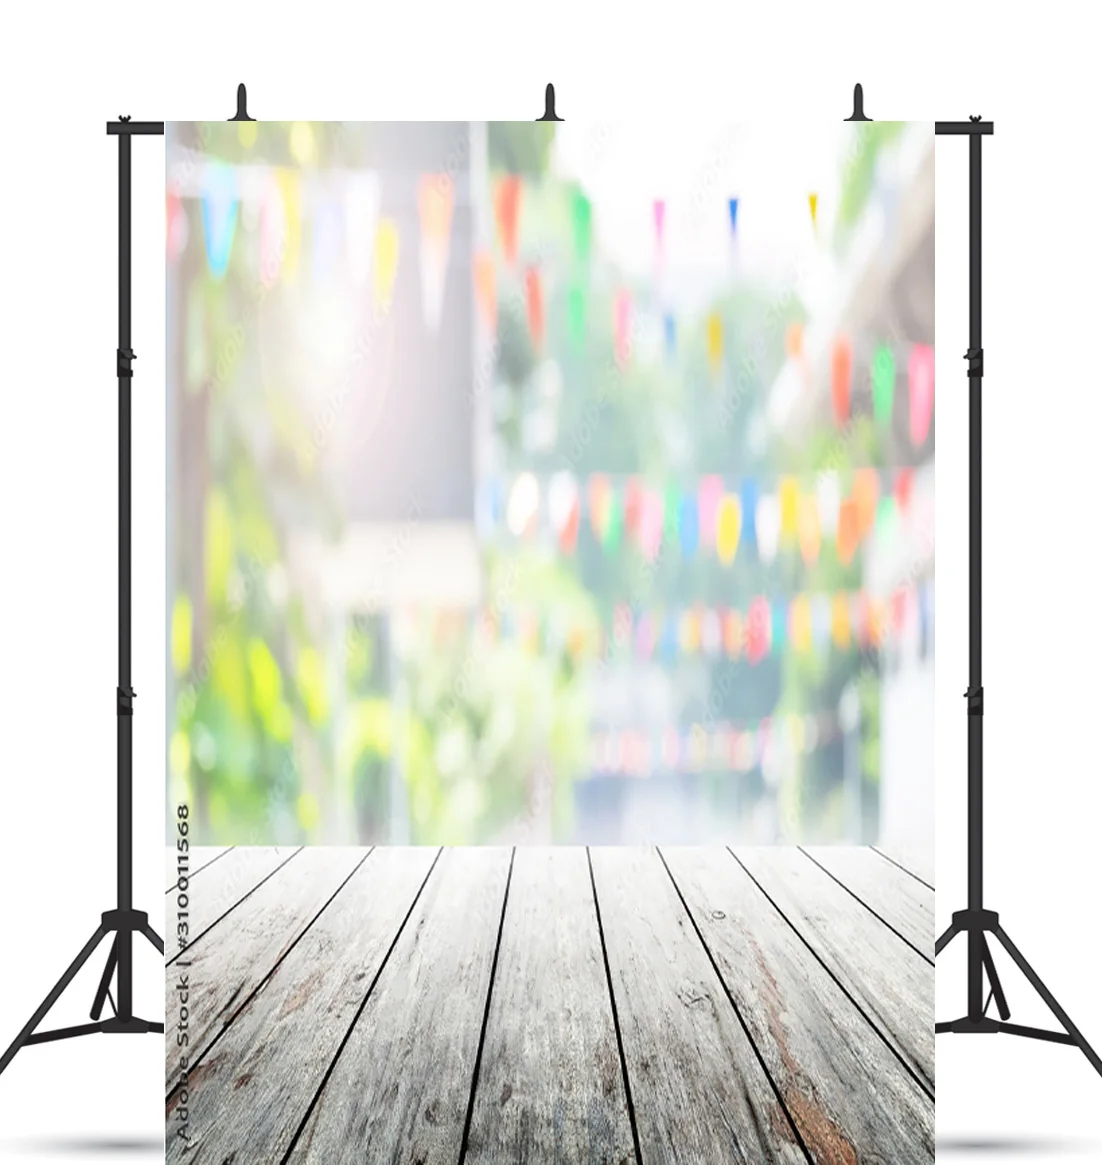 

Виниловый фон для фотосъемки на заказ, Искусственный деревянный пол, реквизит для фотостудии, 21121 пейзаж с цветком